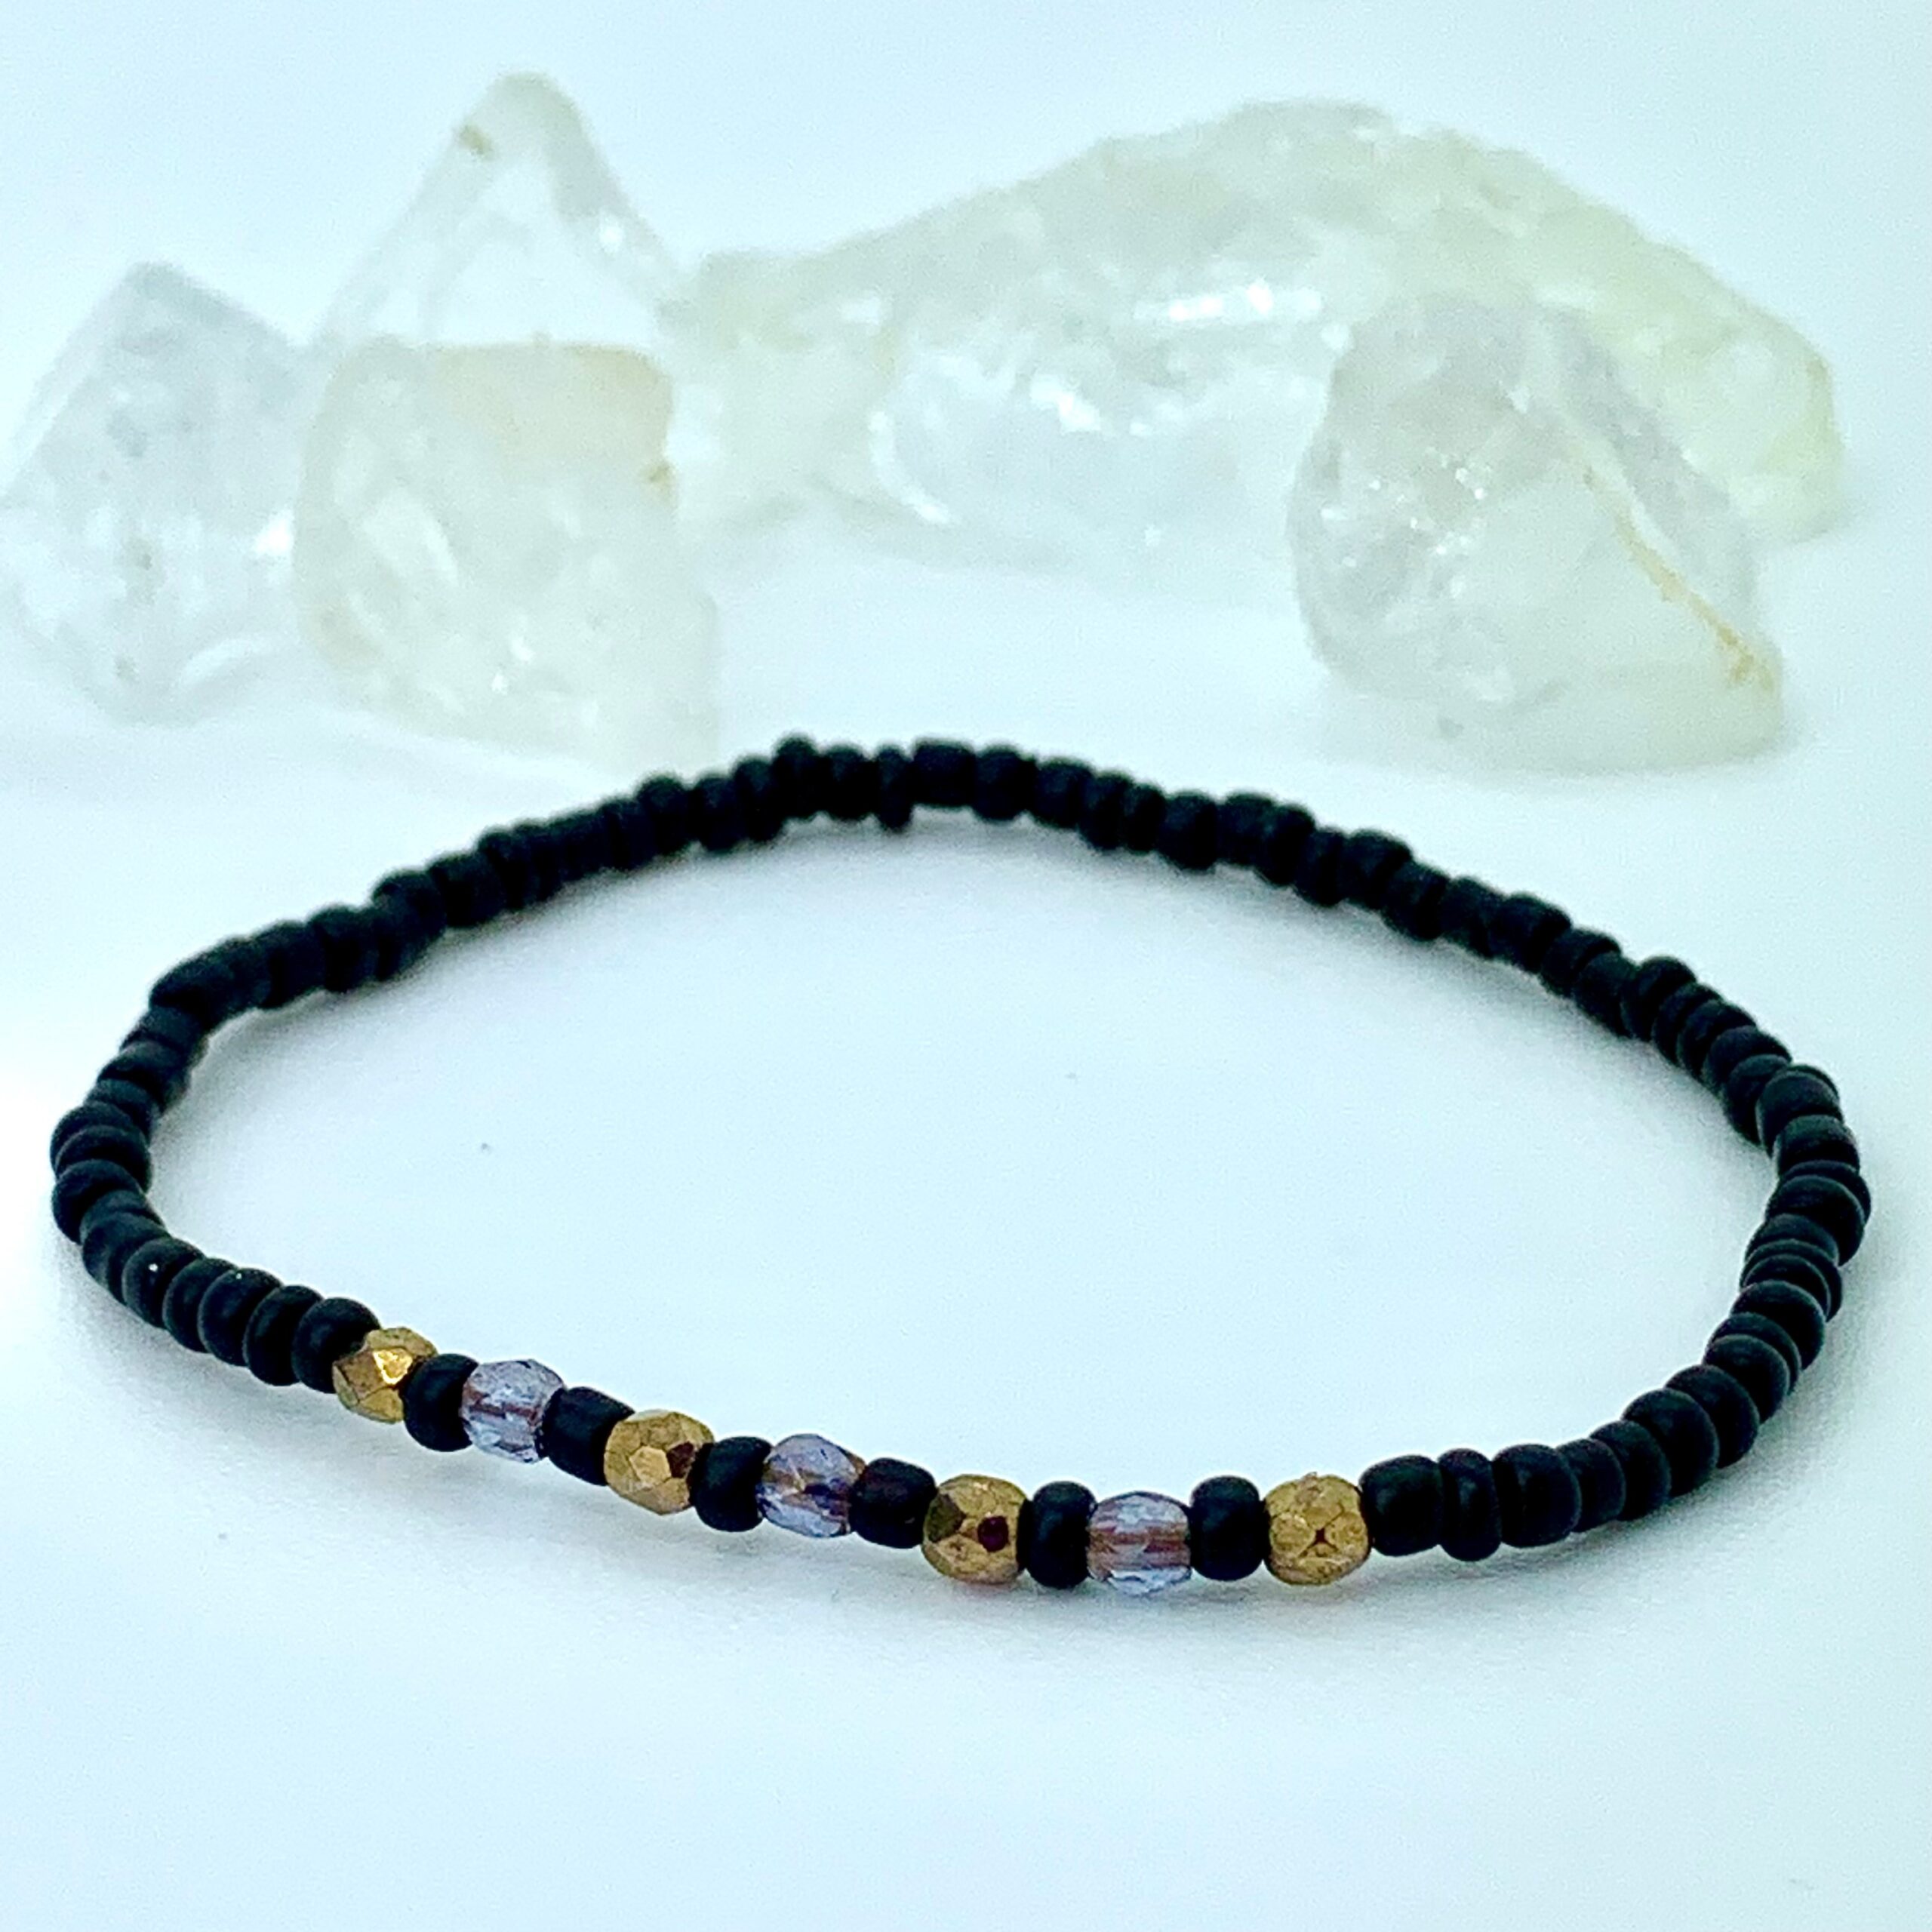 Hovedløse menneskemængde Slagter Armbånd af sorte matte perler og facetterede guld og lilla krystaller ·  Homemade By